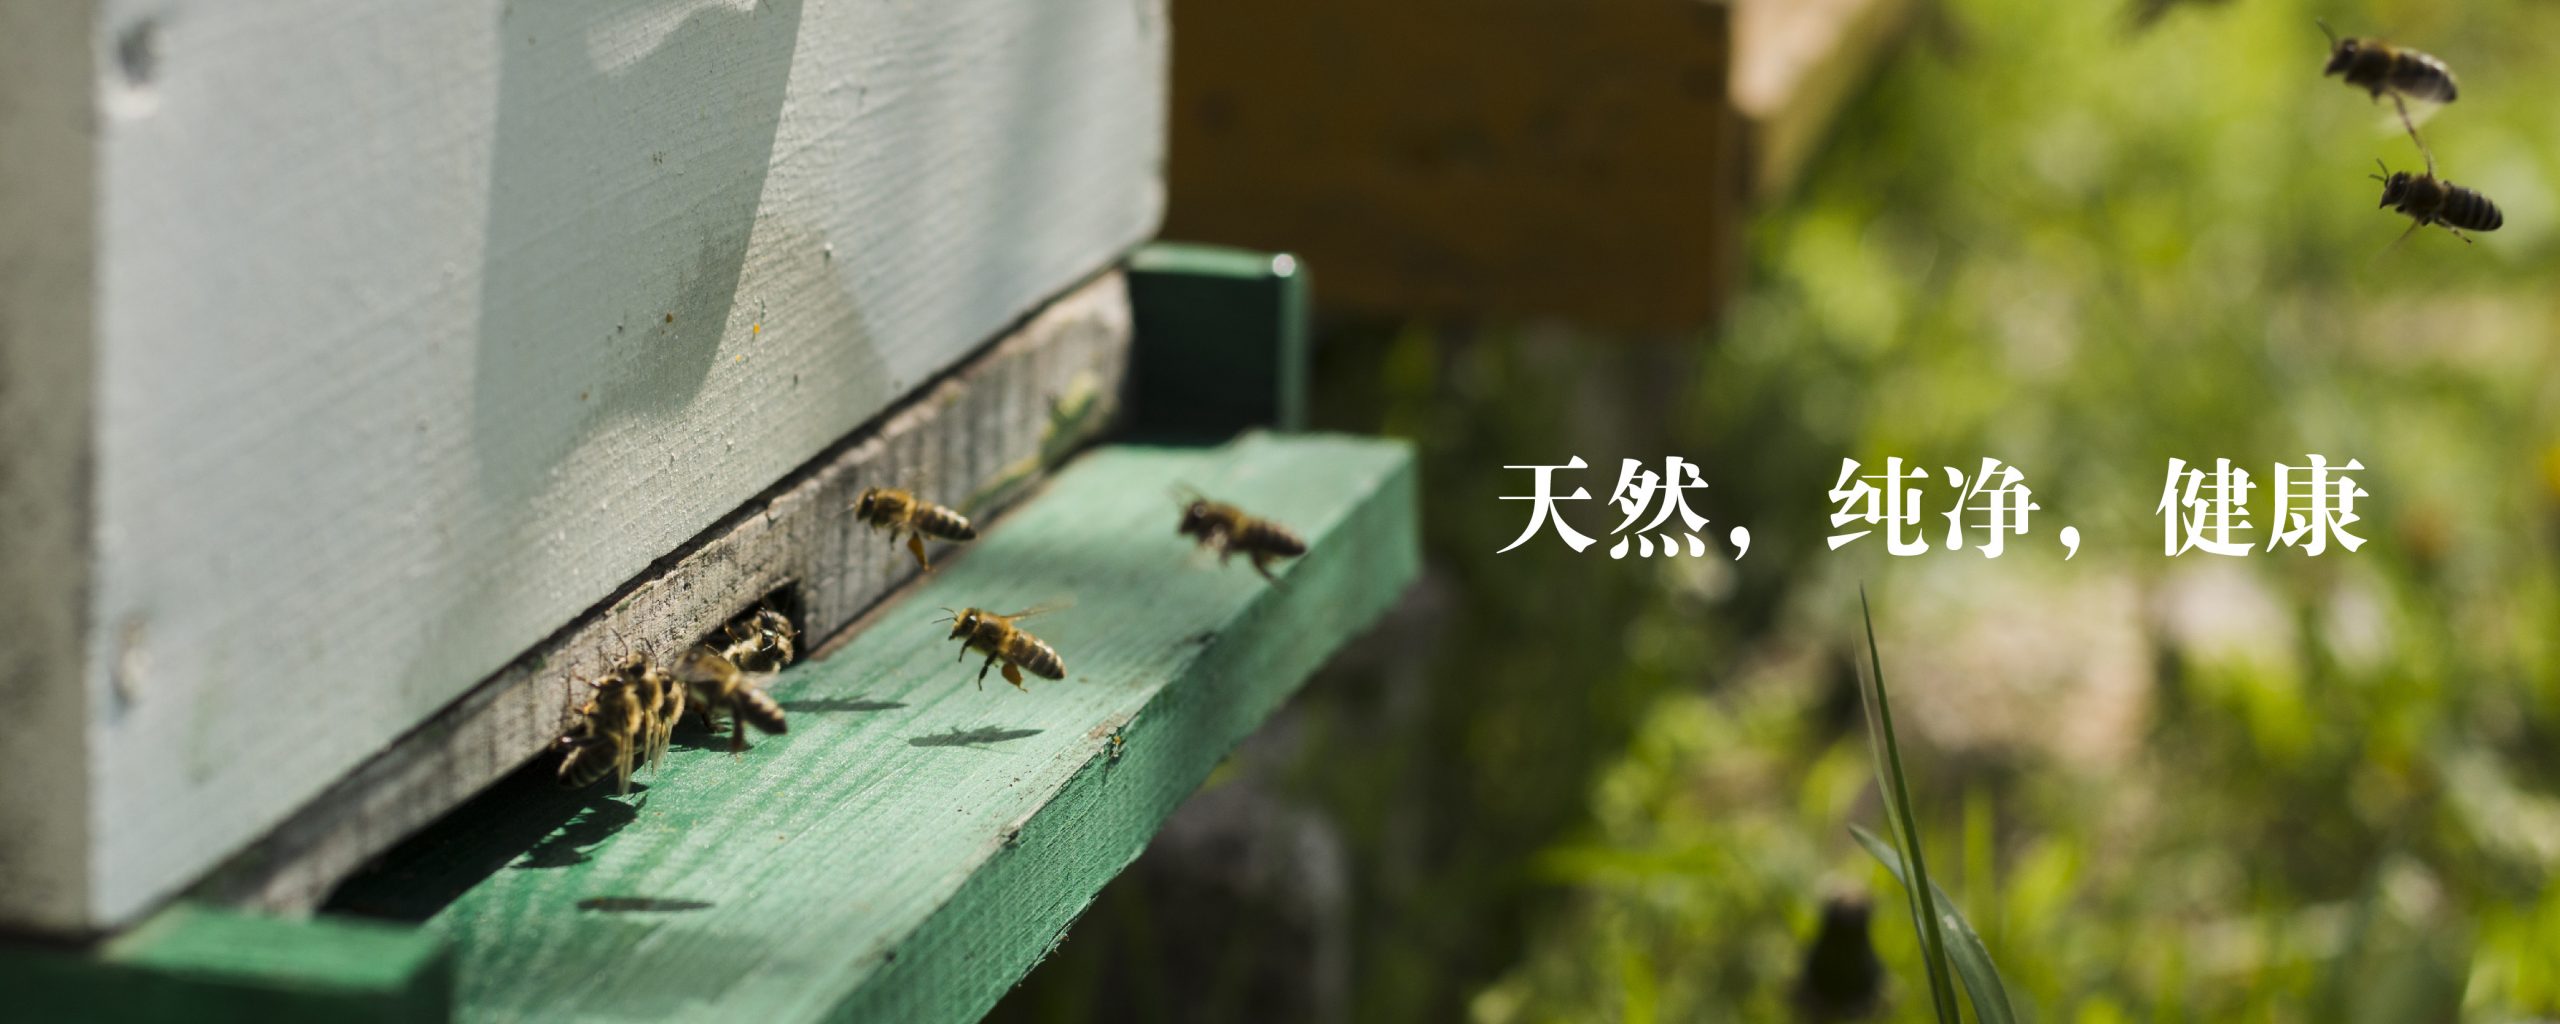 natural honey bee